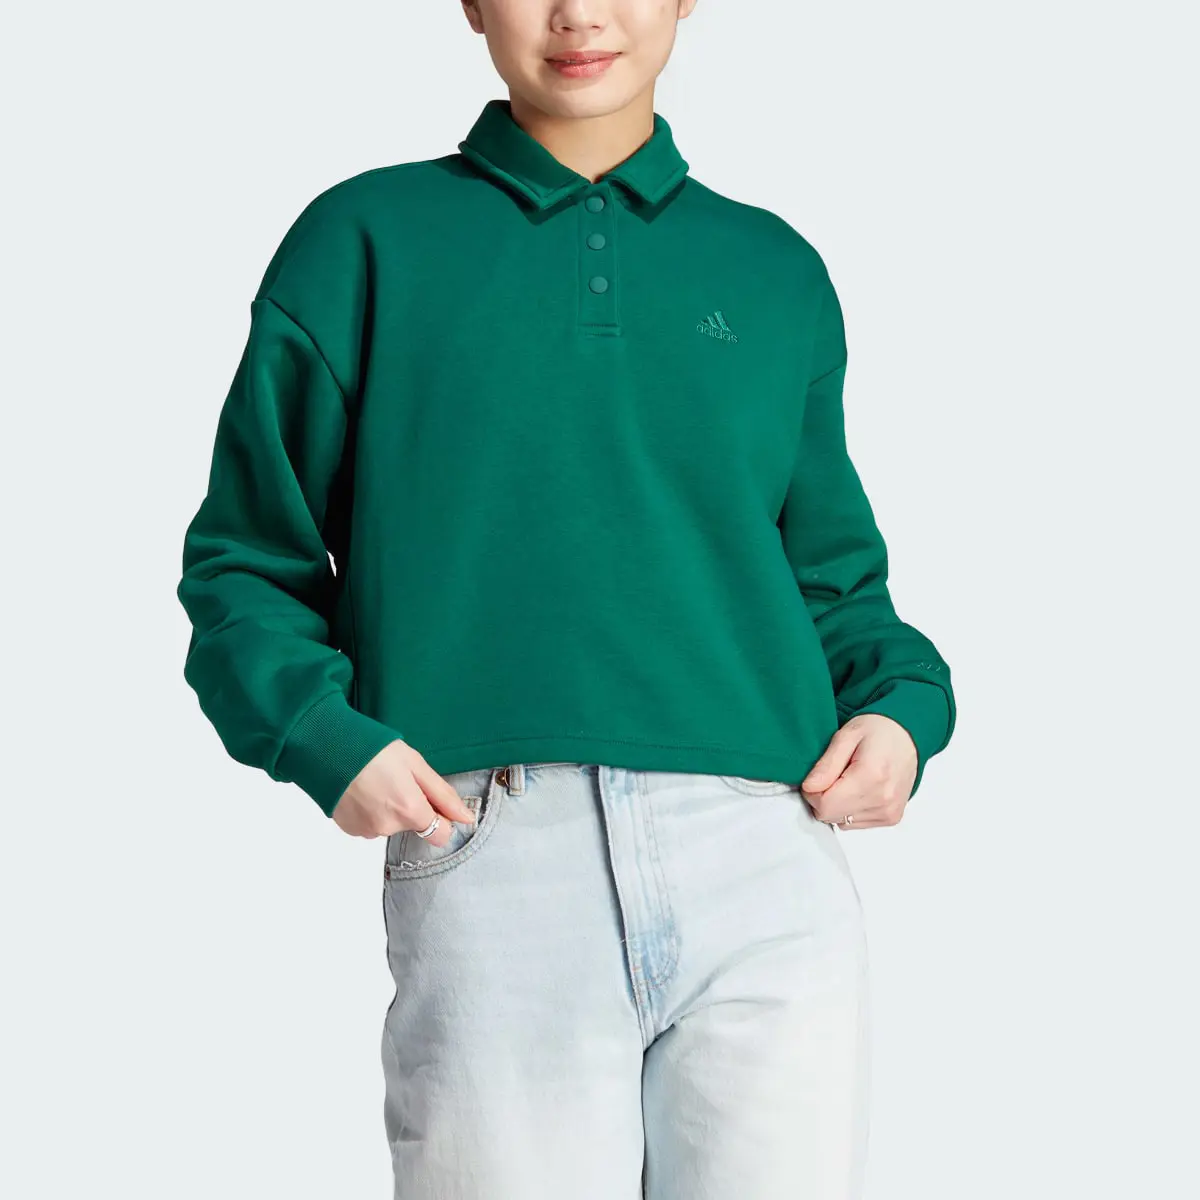 Adidas All SZN Fleece Graphic Polo Sweatshirt. 1